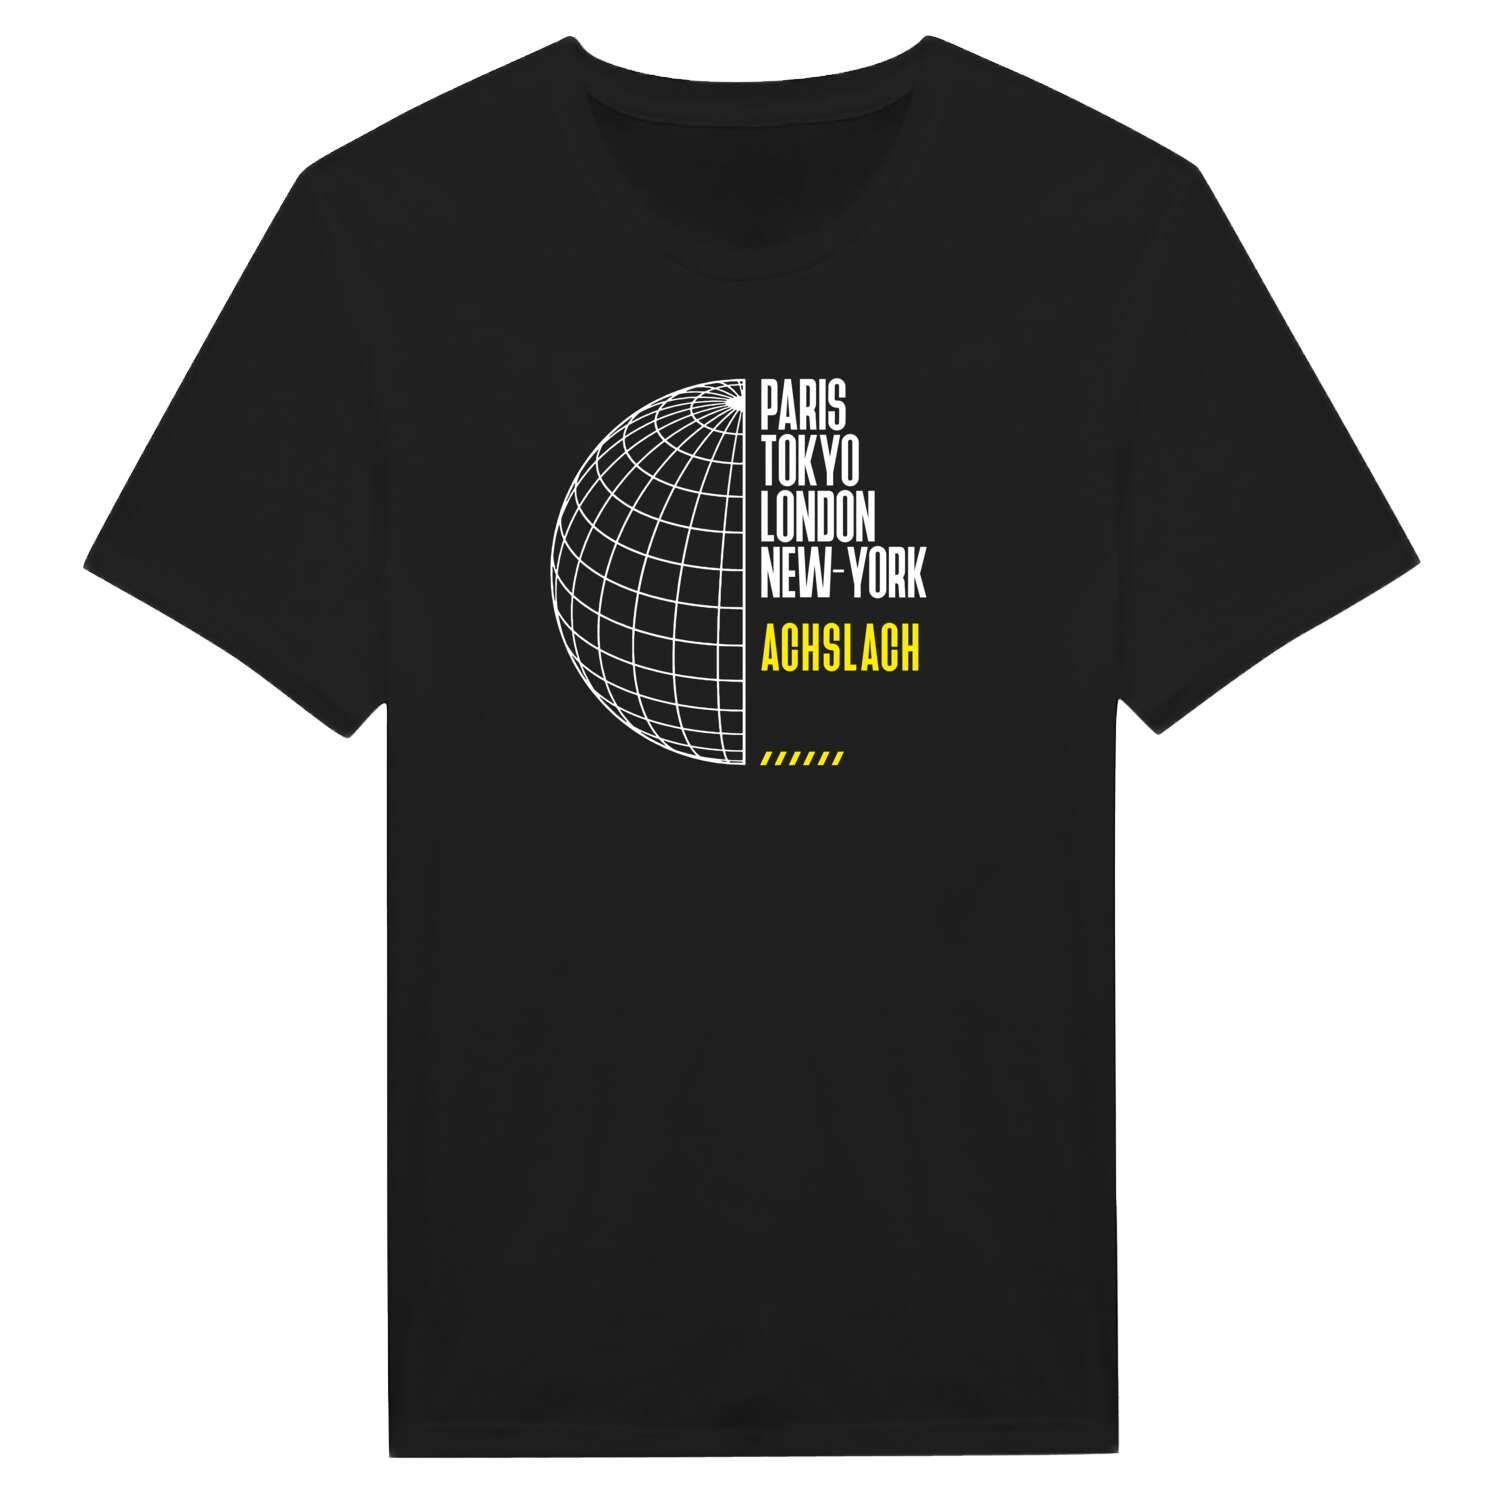 Achslach T-Shirt »Paris Tokyo London«